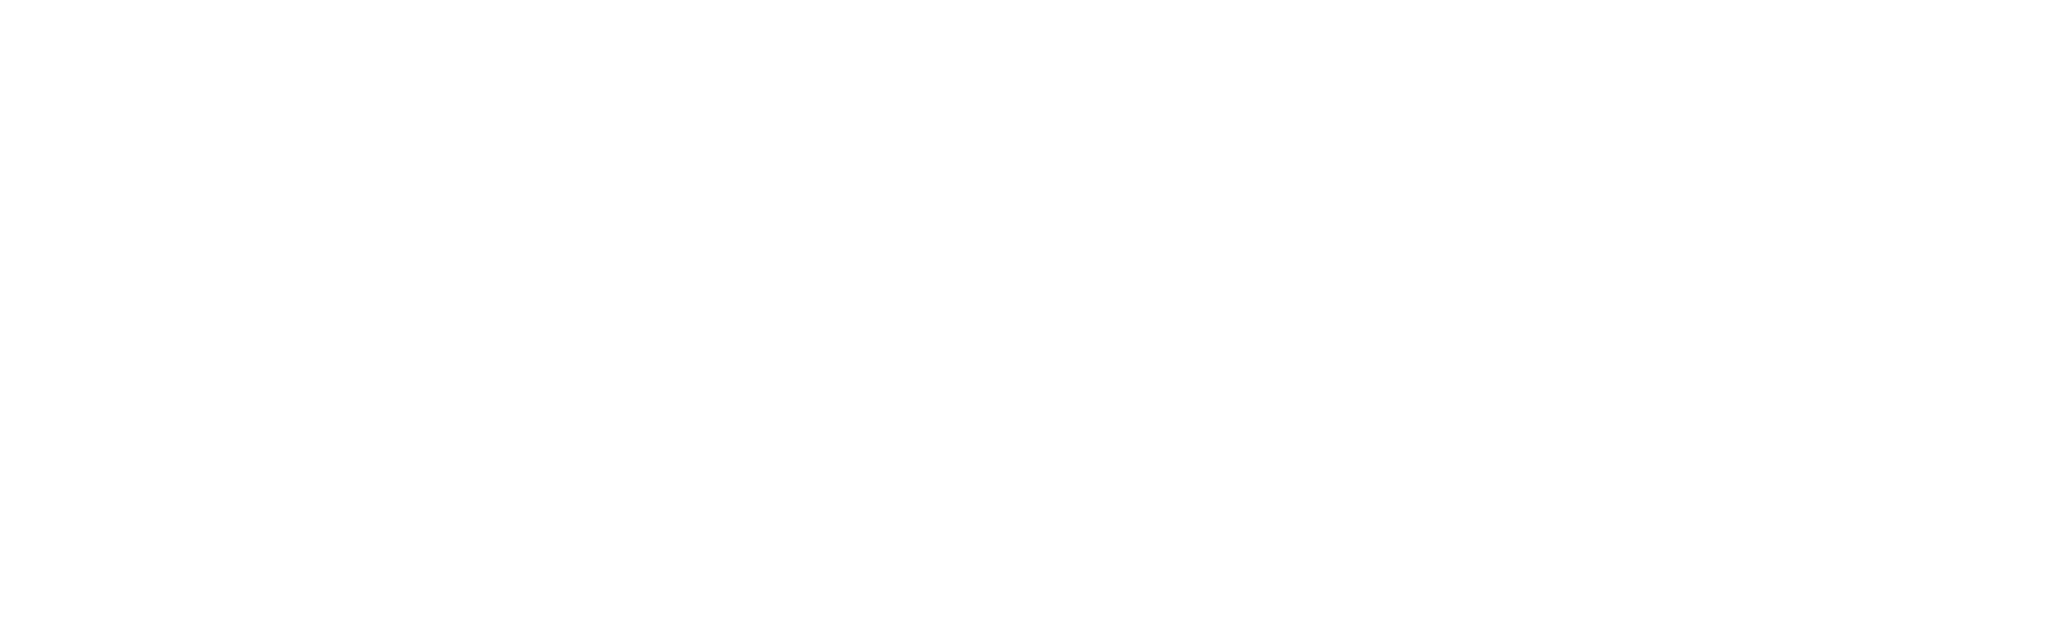 Comité National de Coordination de la Recherche-BLANCO